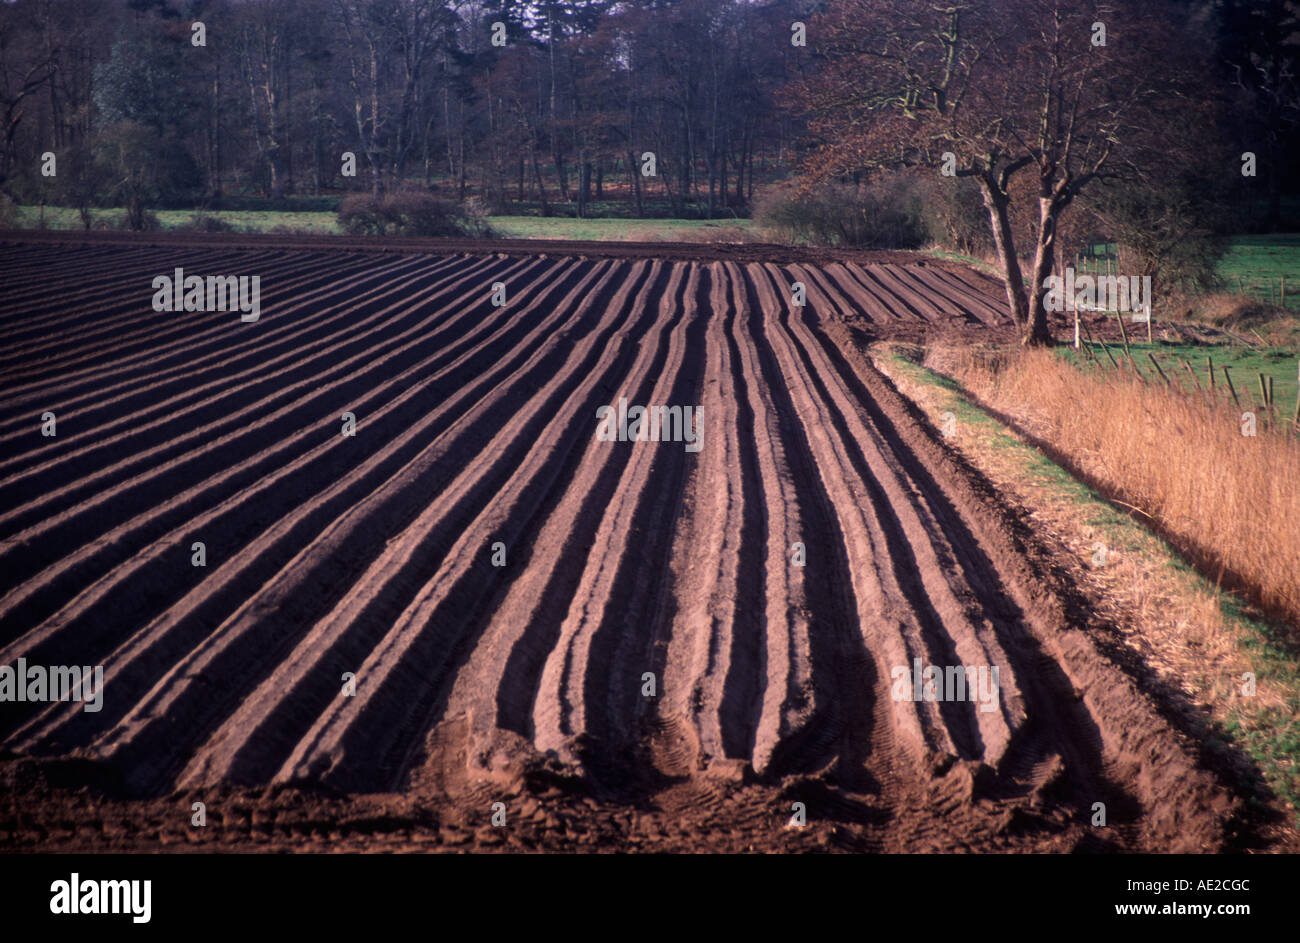 Furrows for planting potato crop Butley Suffolk England Stock Photo